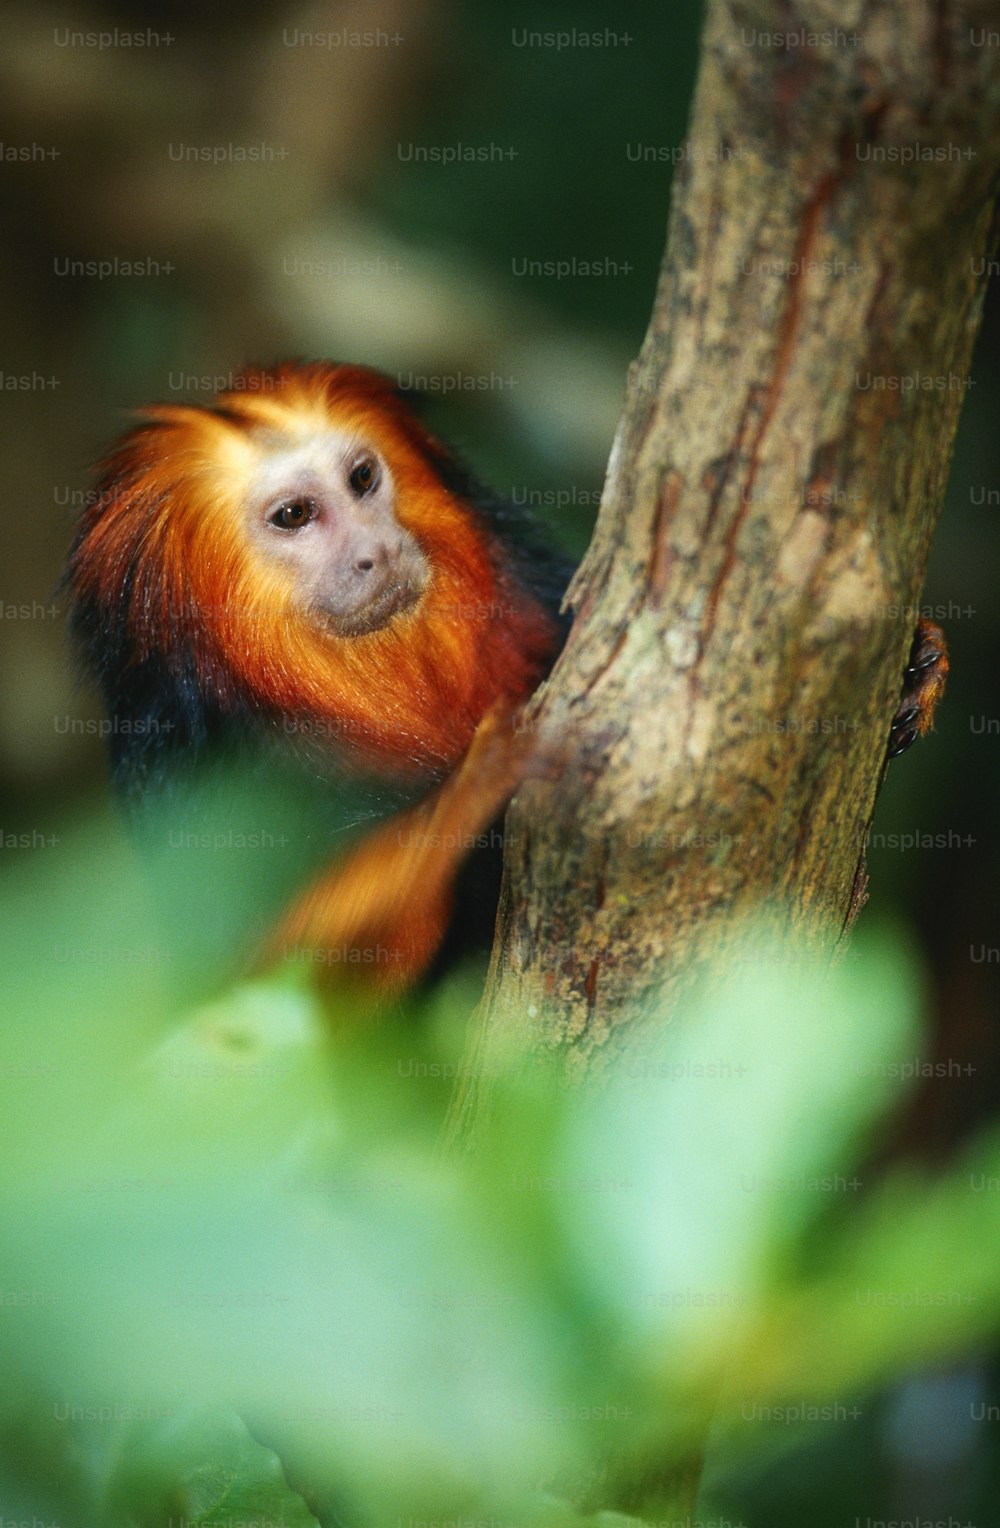 Una piccola scimmia arancione e bianca appesa a un albero